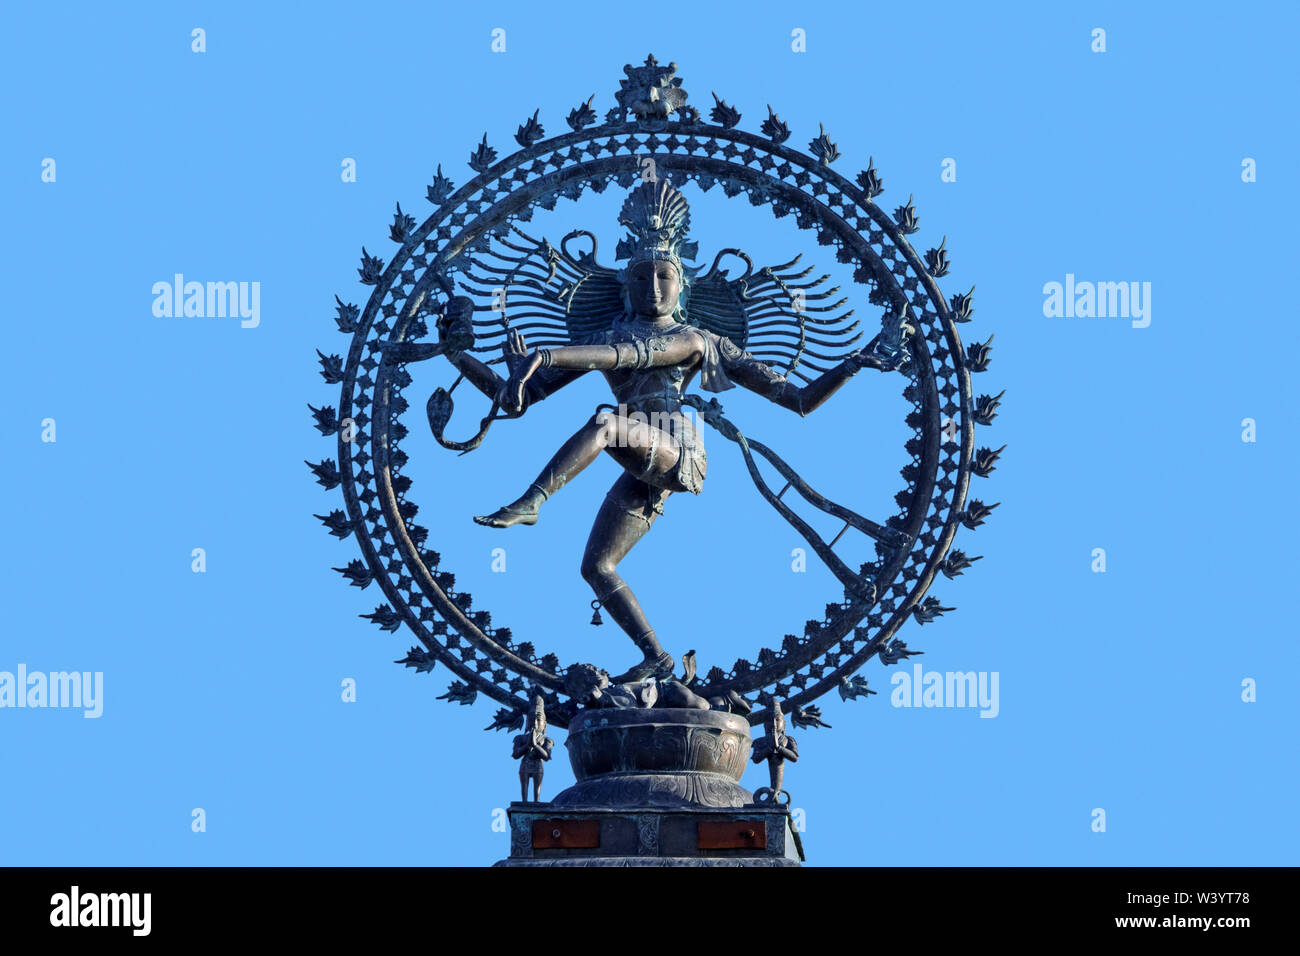 Nataraja, Darstellung des hinduistischen Gottes Shiva als kosmische ekstatische Tänzer/Herr des Tanzes vor blauem Himmel Stockfoto